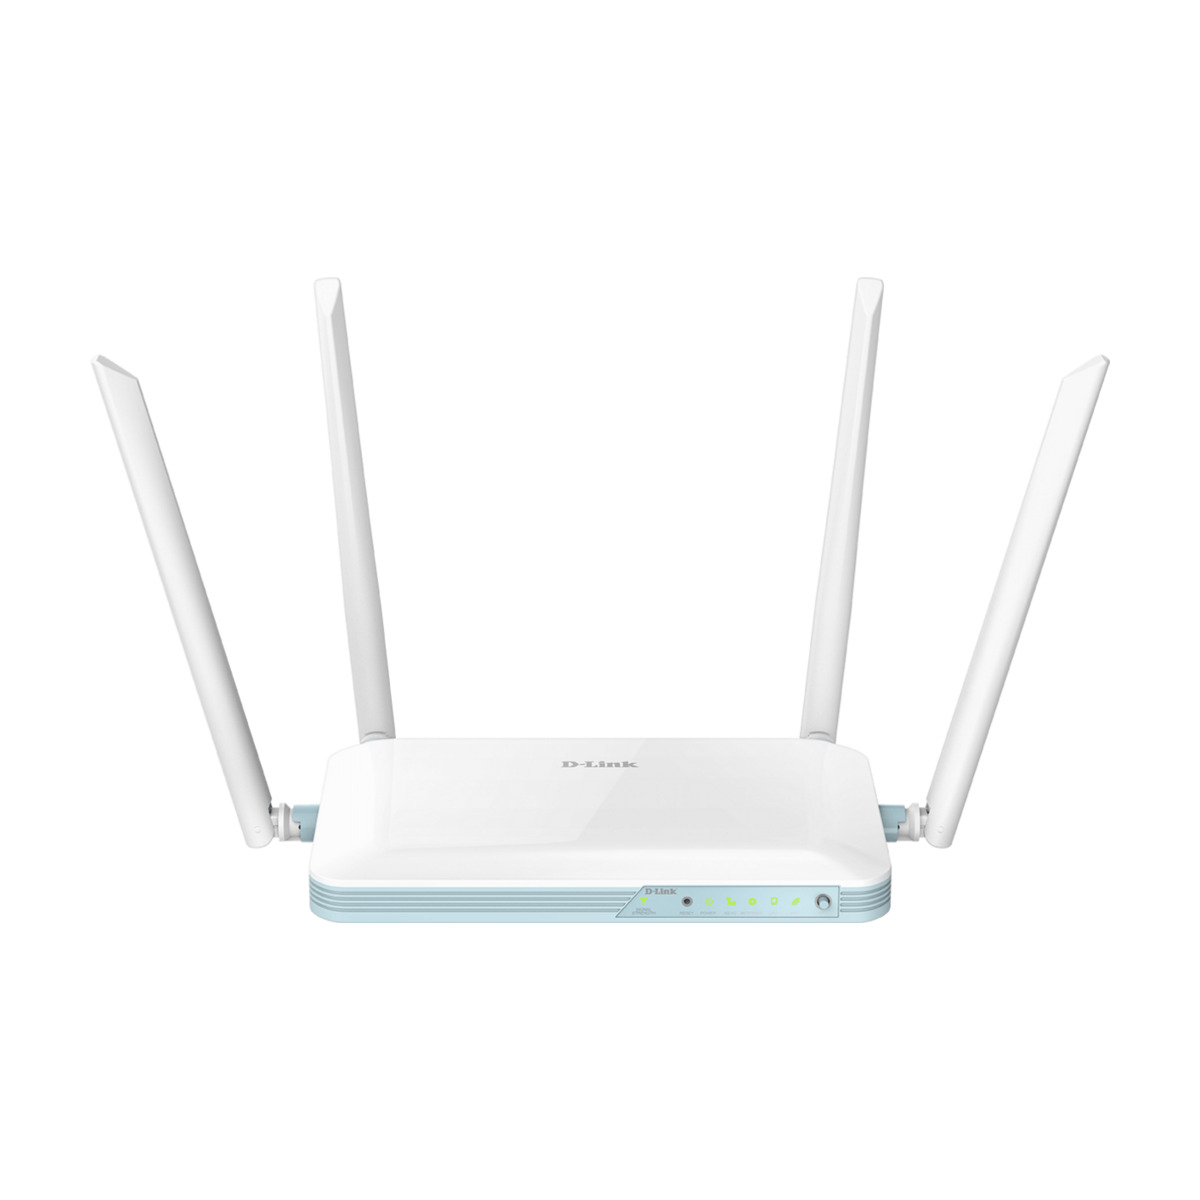 D-Link G403 EAGLE PRO AI N300 4G router